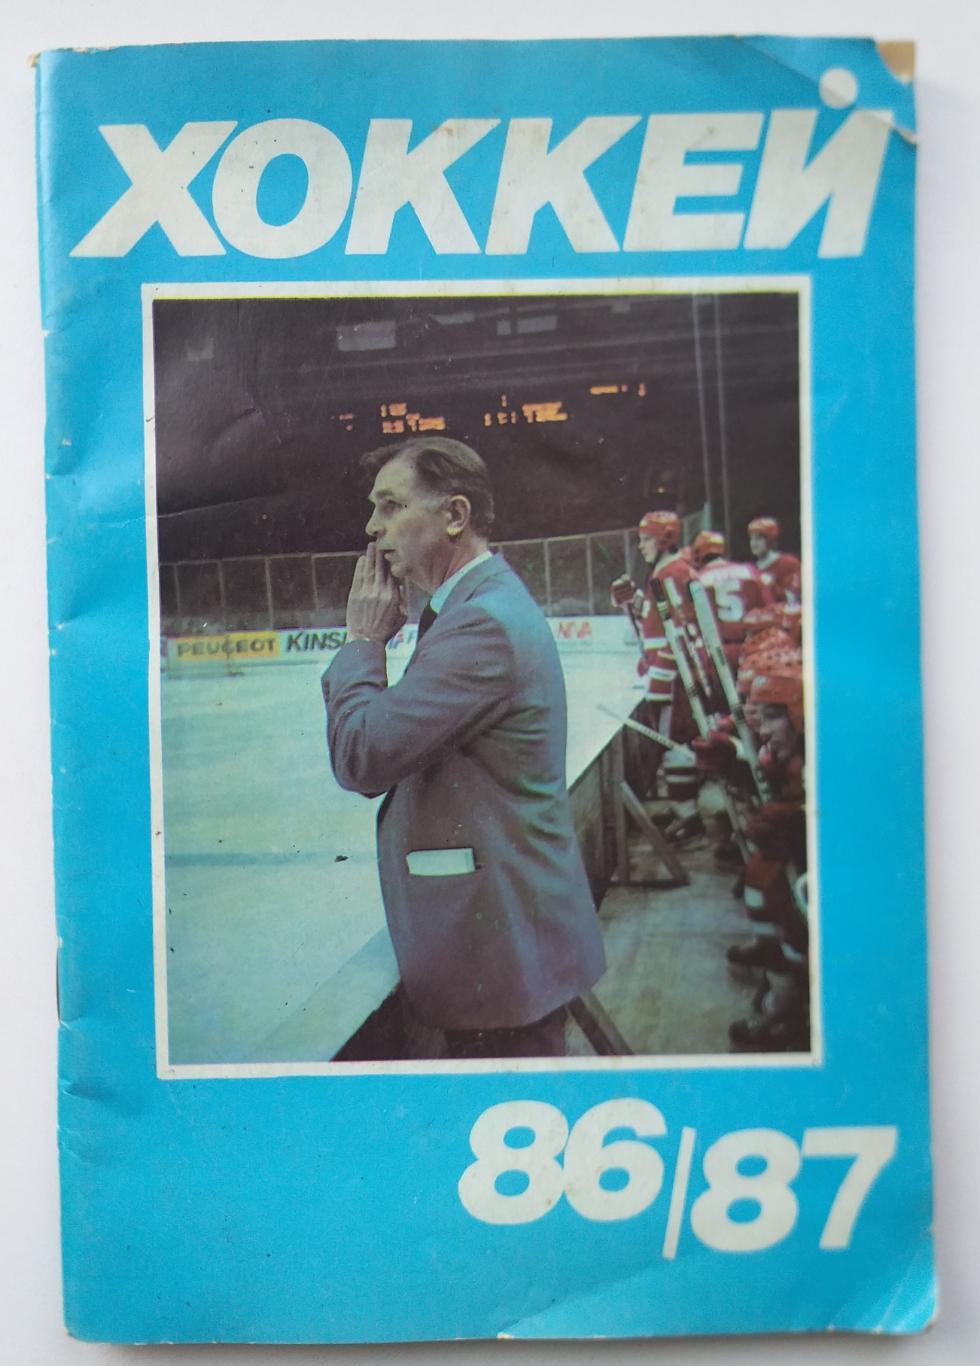 Справочник календарь хоккей 1986/87 Москва Московская правда